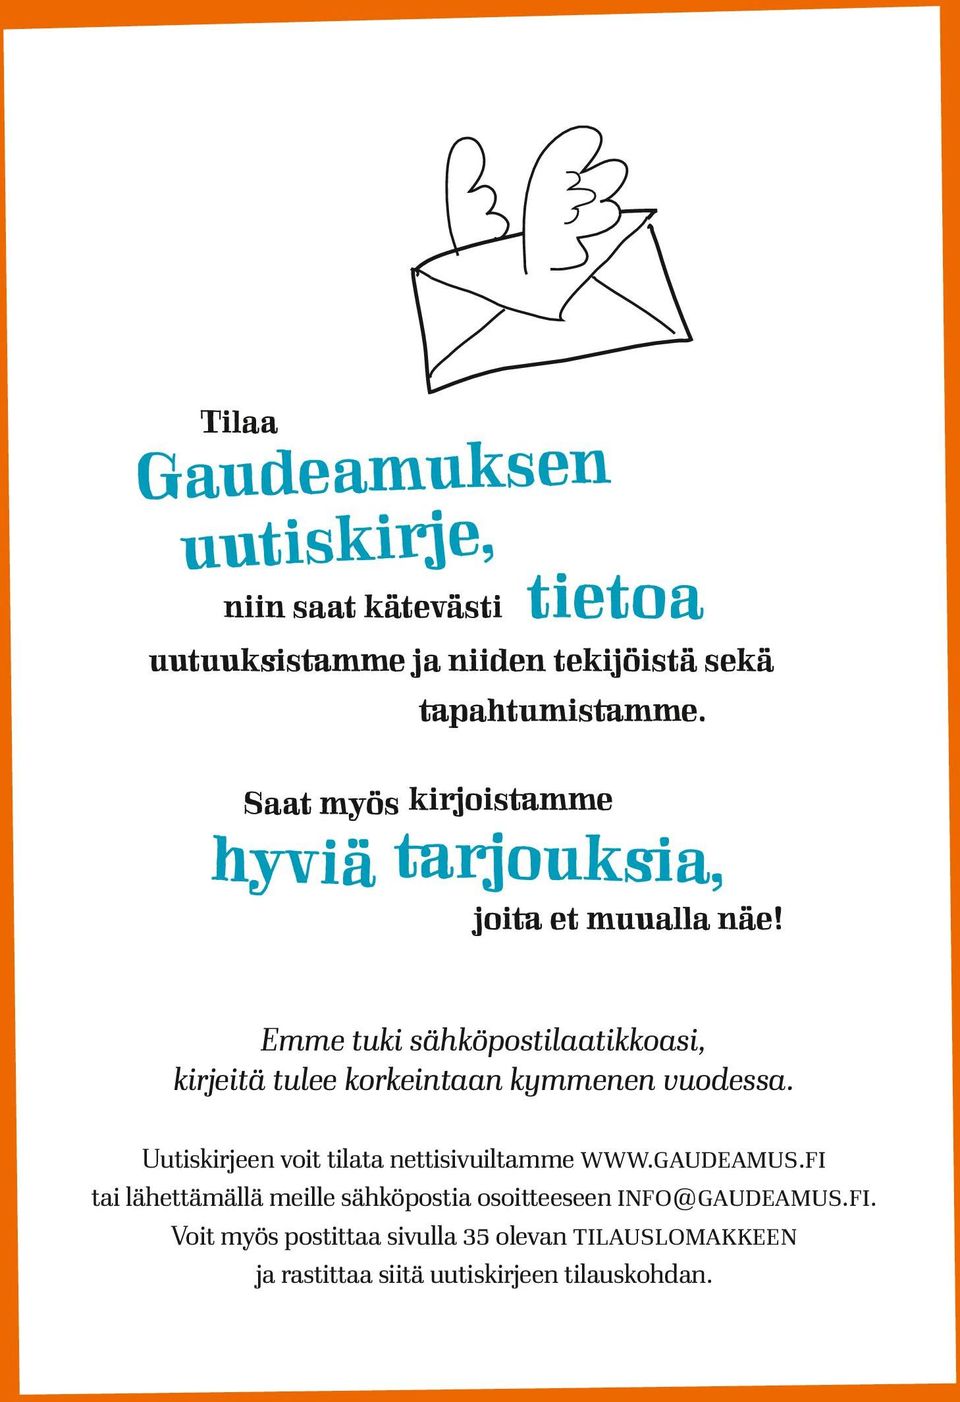 fi tai lähettämällä meille sähköpostia osoitteeseen info@gaudeamus.fi. Voit